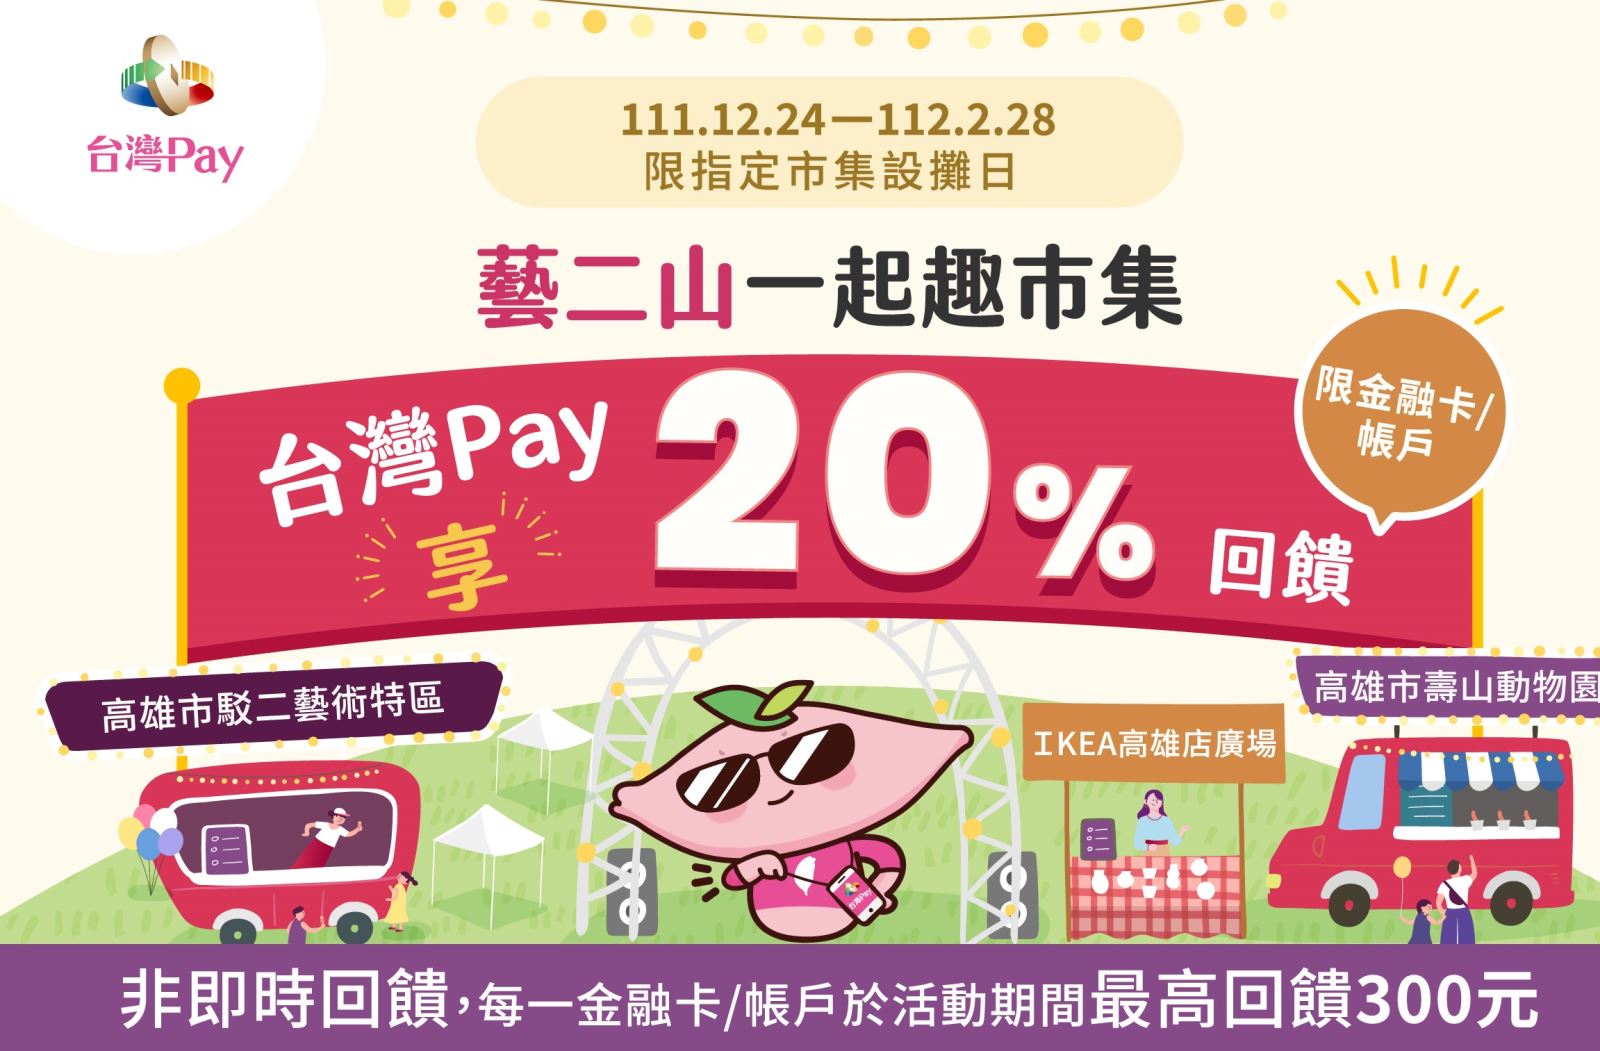 用戶於市集設攤日至活動地點，以「台灣Pay」QR Code掃碼支付，單筆消費不限金額可享20%現金回饋